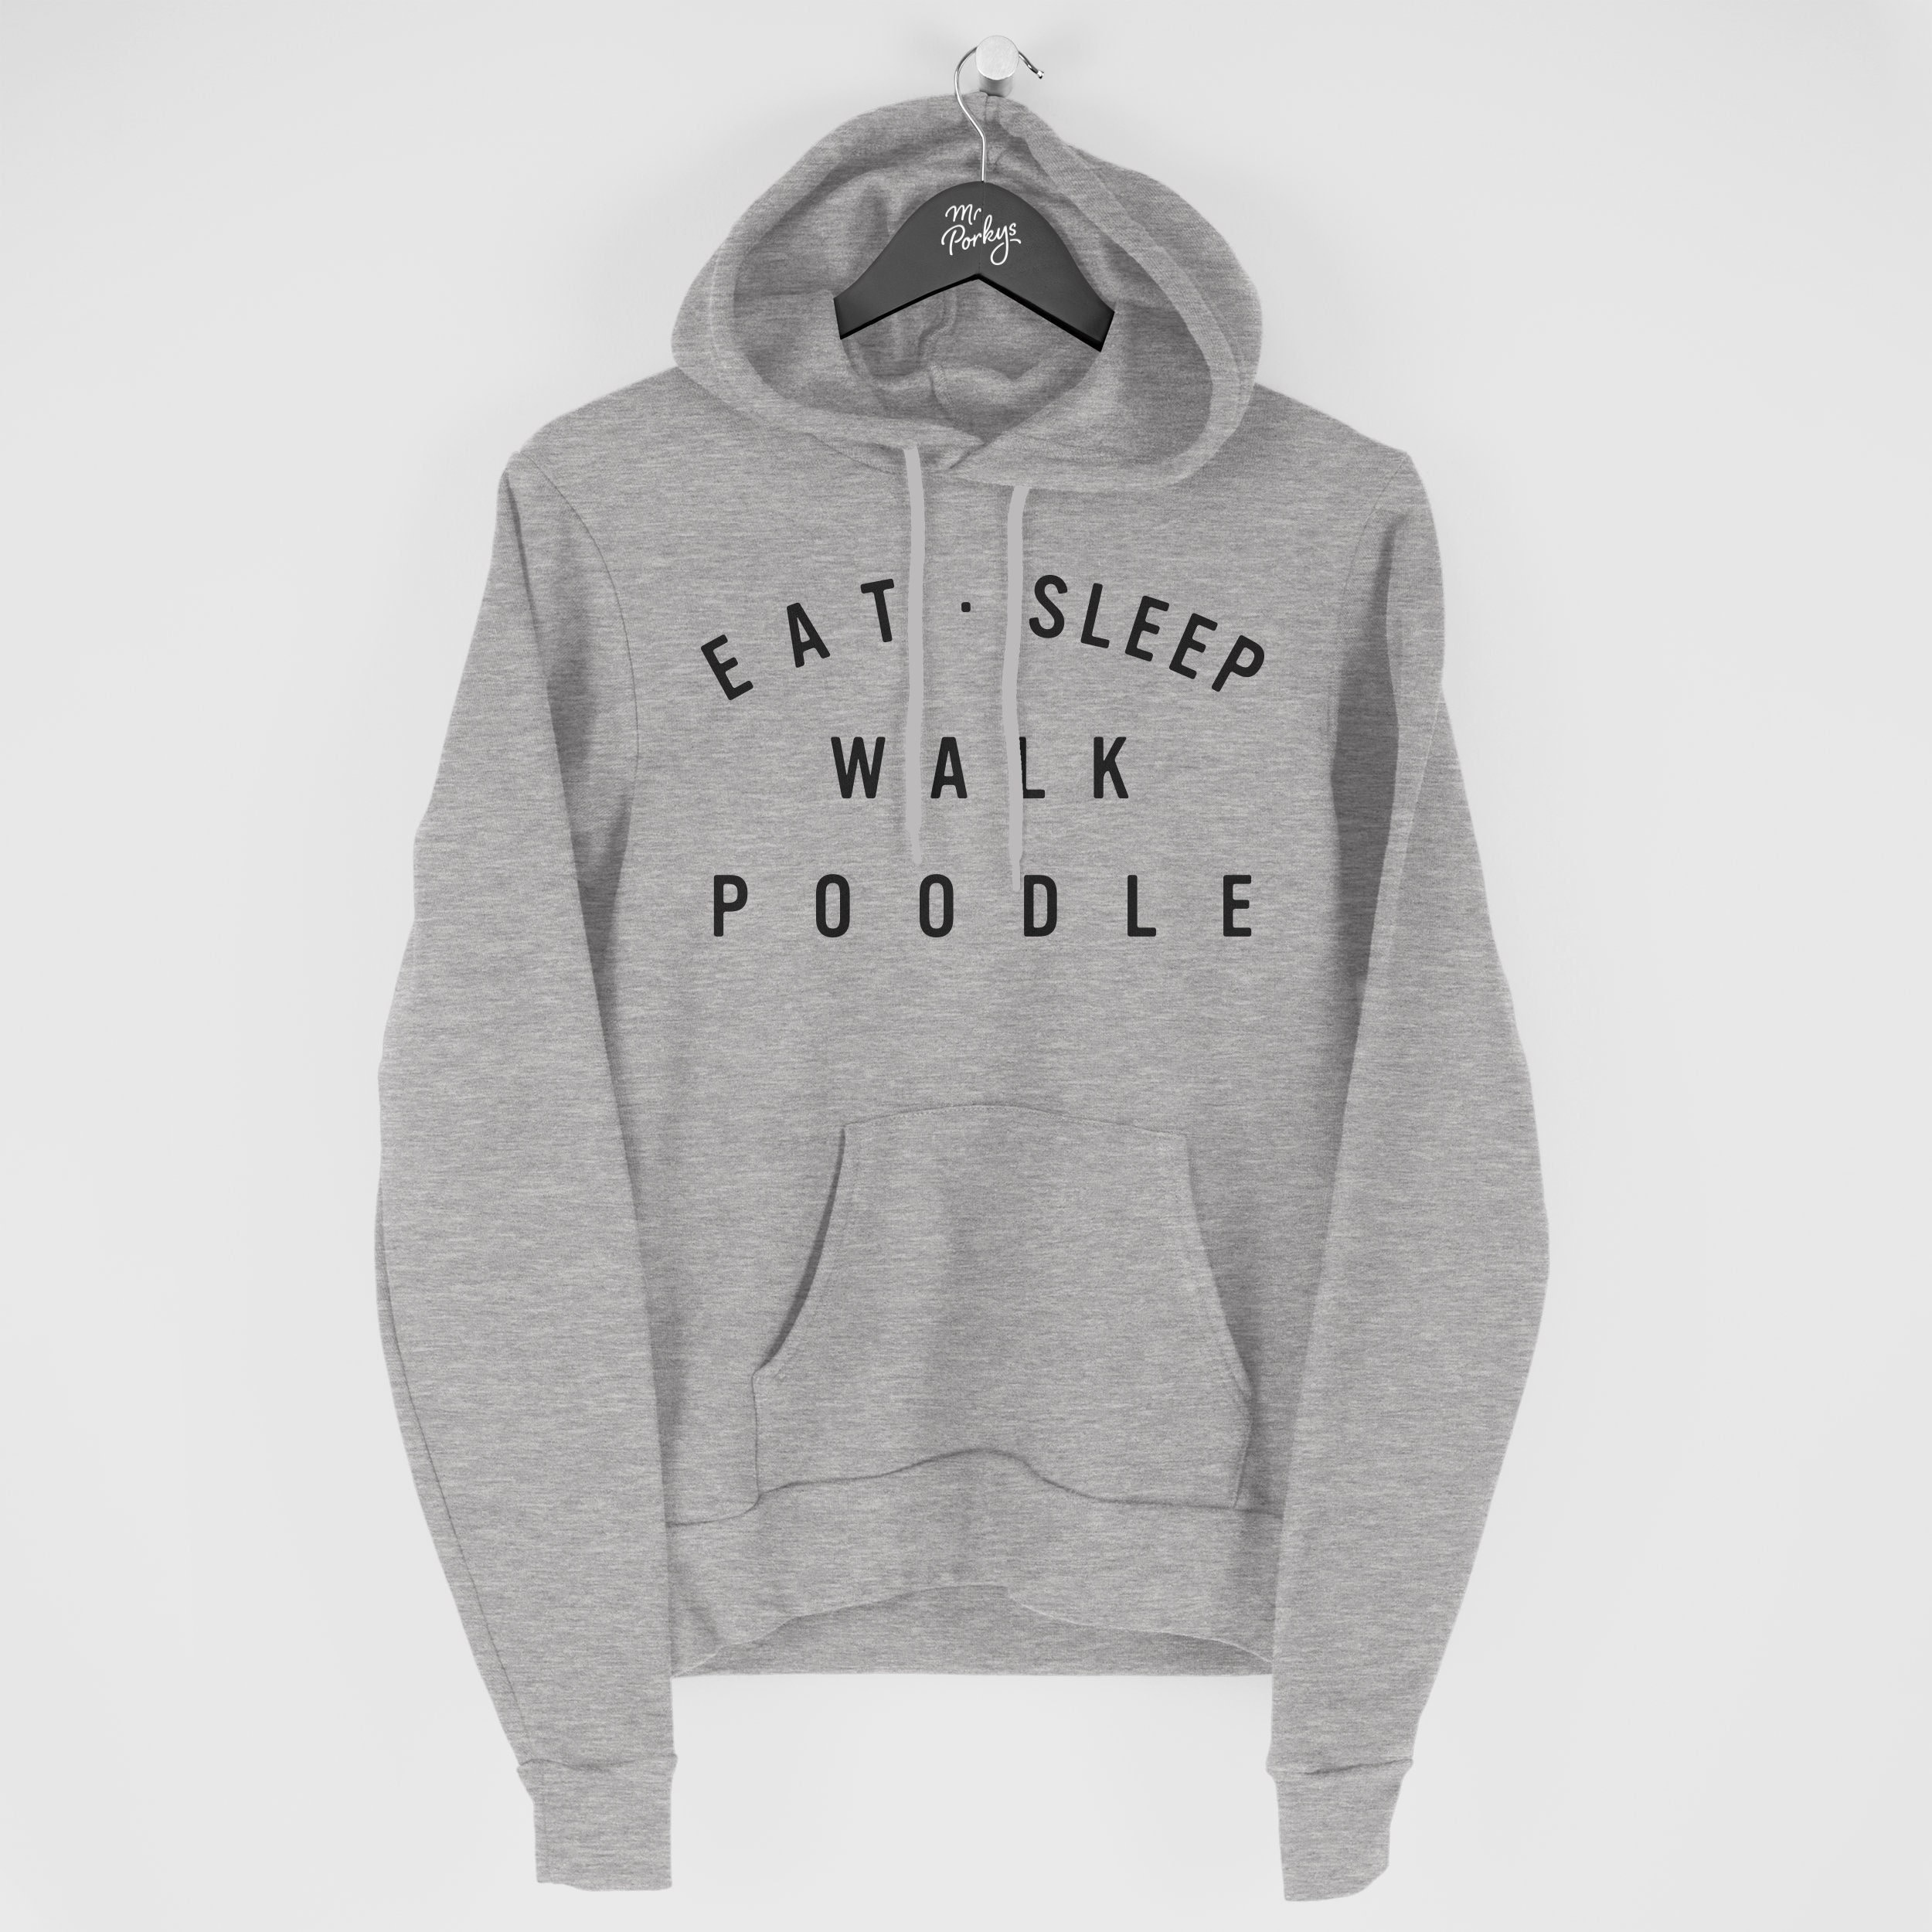 Poodle Hoodie, Eat Sleep Walk Gift For Owner, Hoody